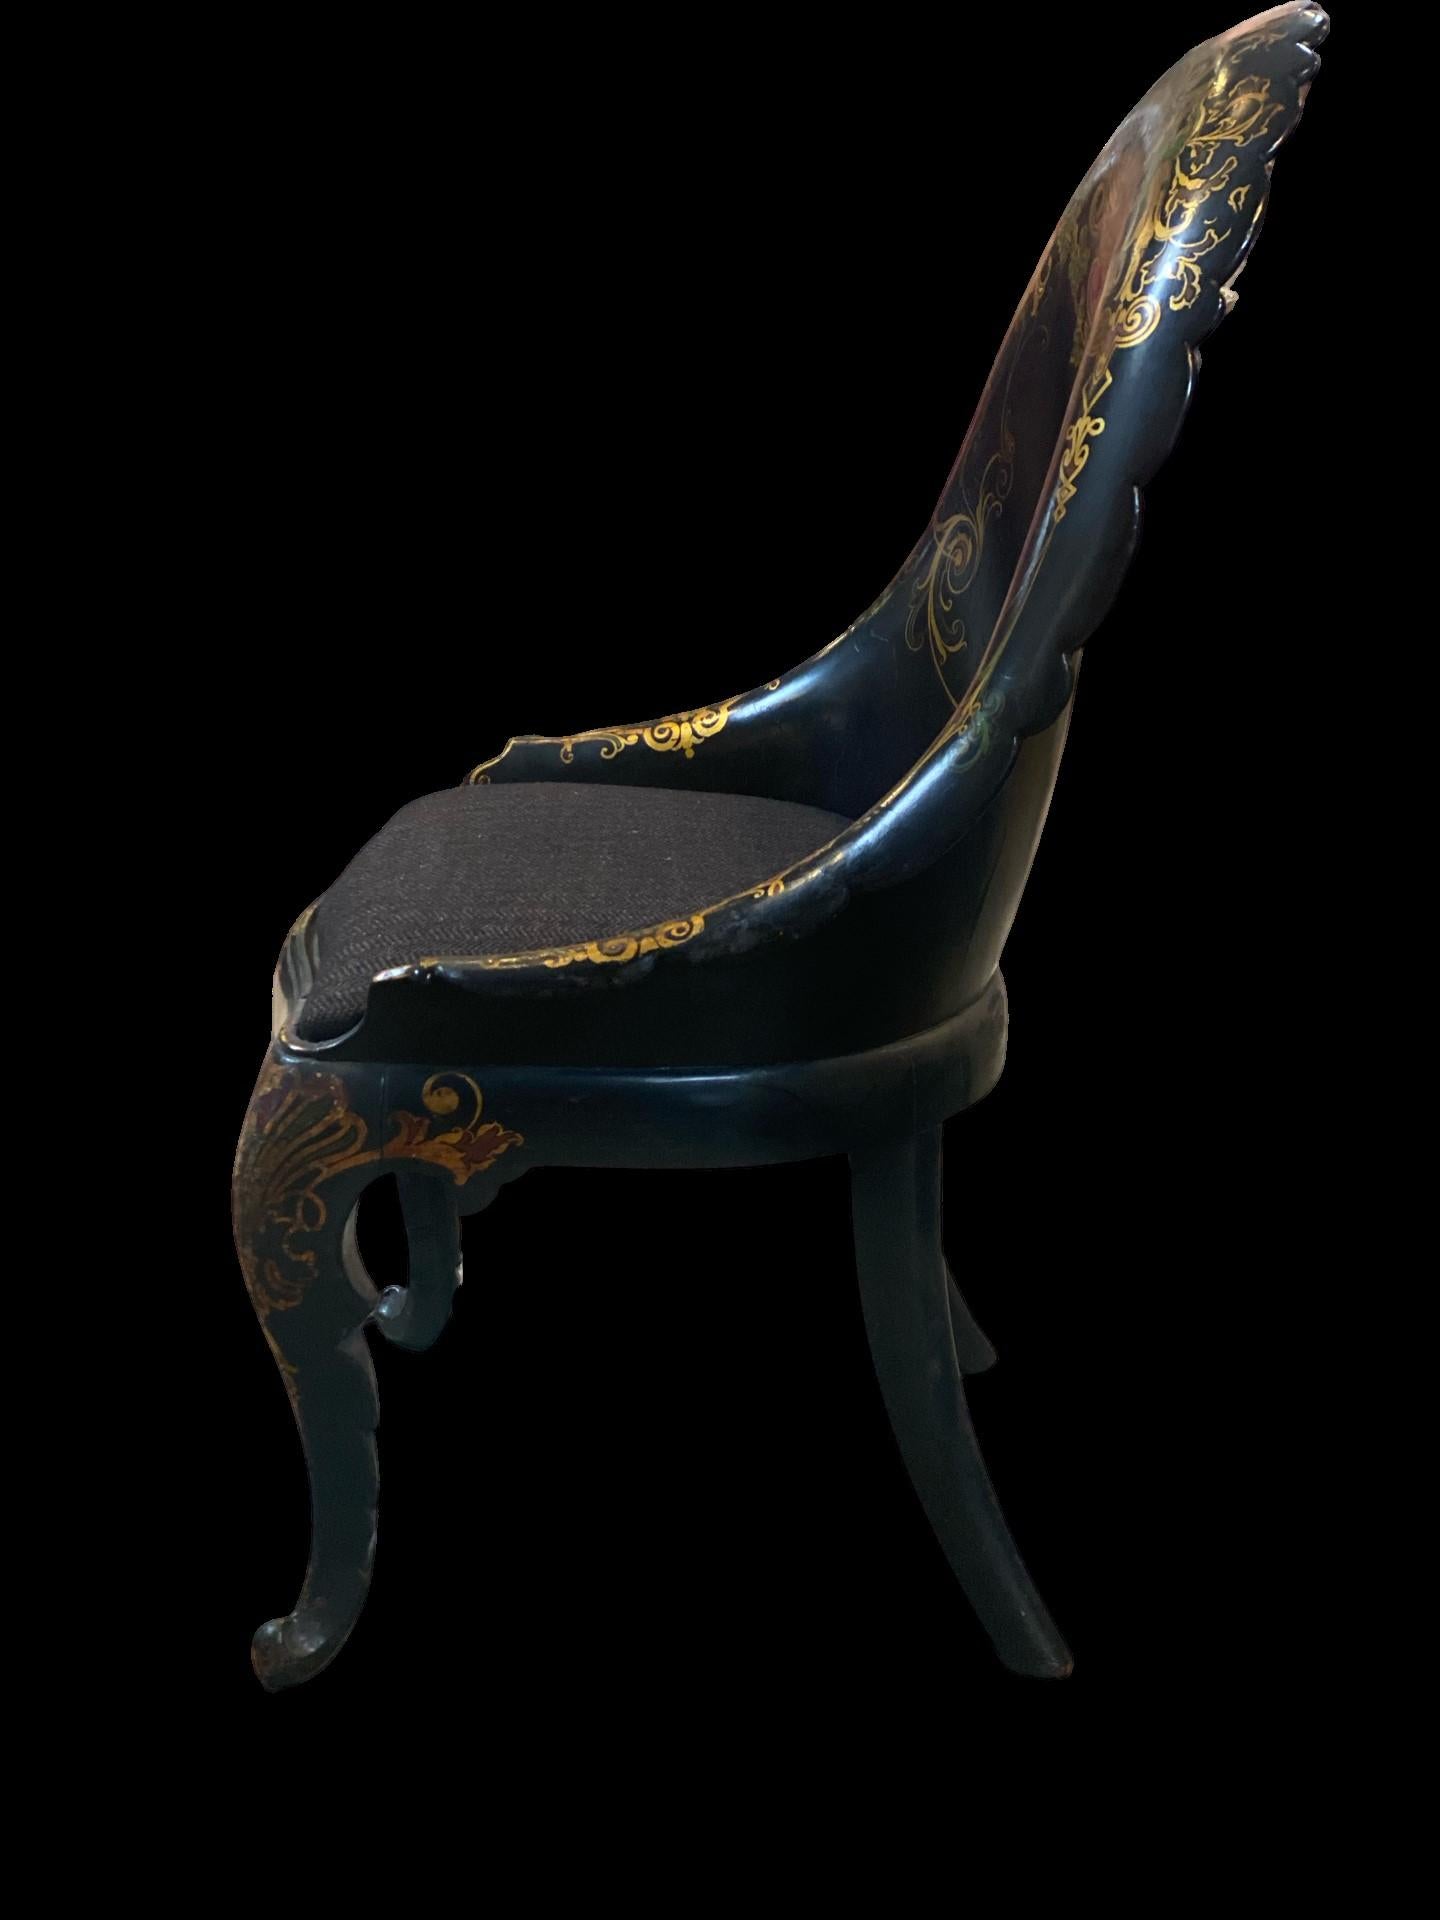 English Papier-mâché 19th century gold leaf detail chair.